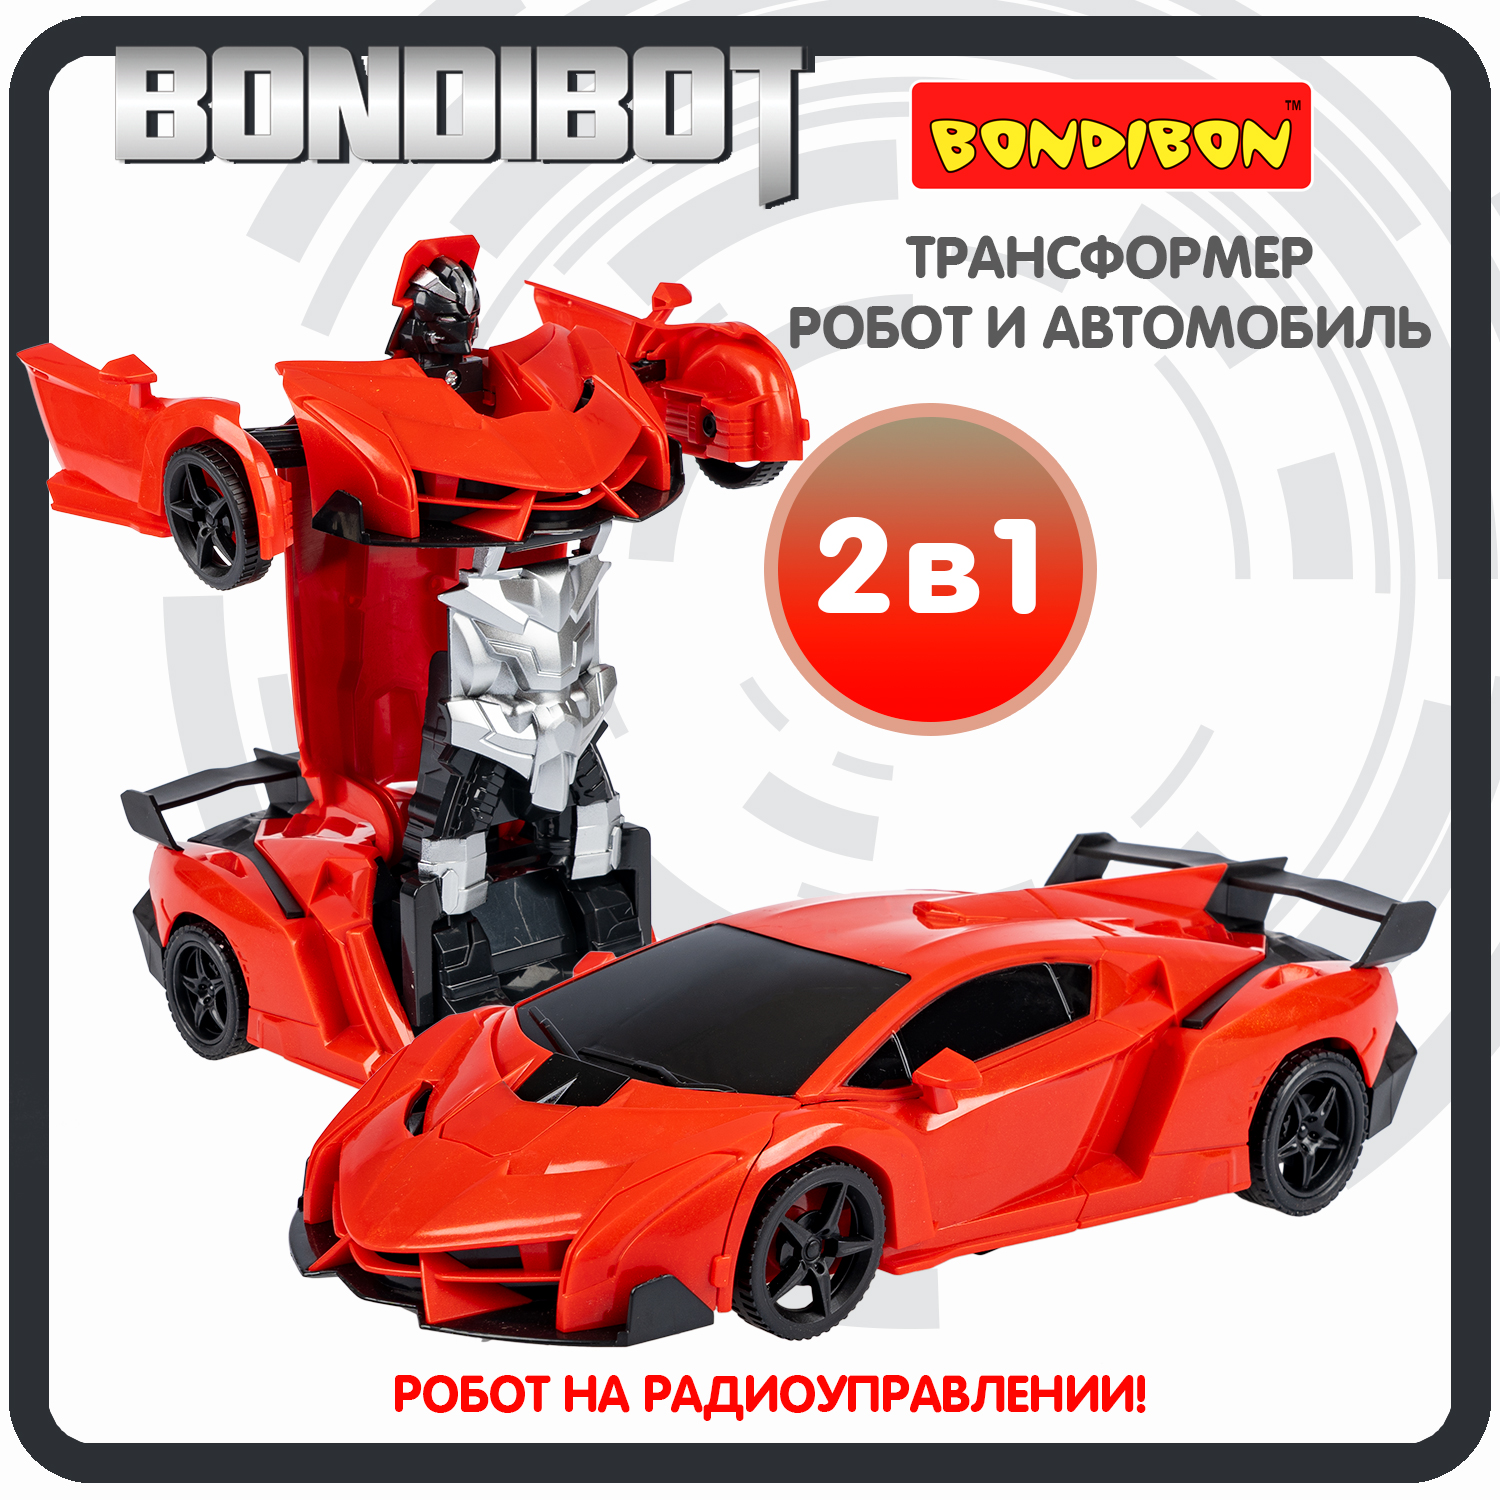 Трансформер 2в1 BONDIBOT на радиоуправлении робот и автомобиль /ВВ6066 трансформер 2в1 bondibot на радиоуправлении робот и автомобиль вв6067